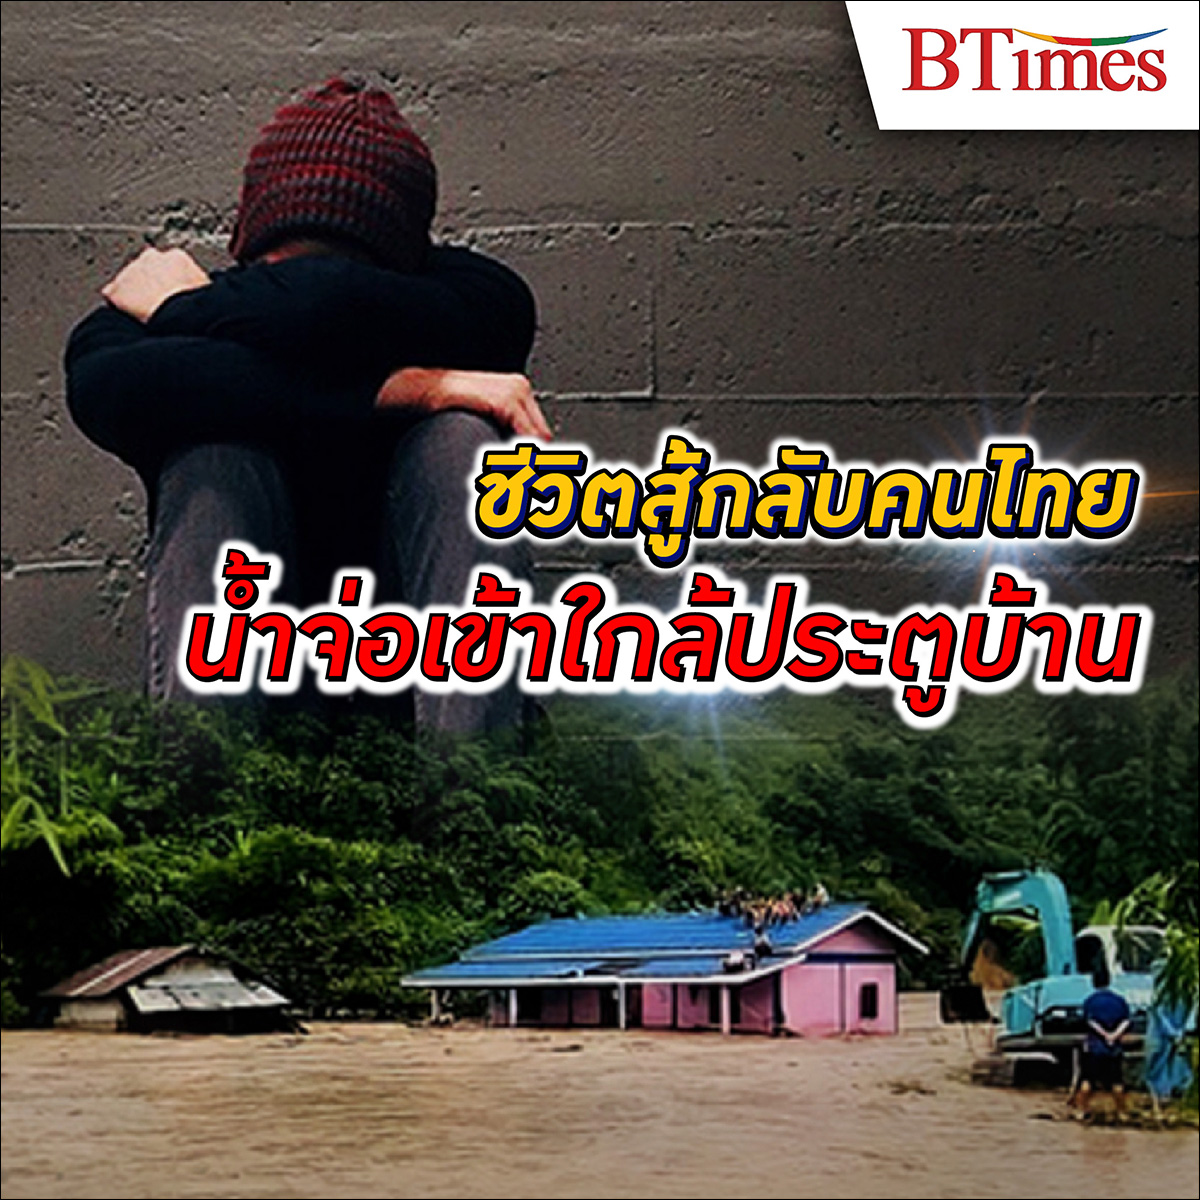 พระพิรุณส่งสัญญาณเตือน คนไทย พร้อมรับมือ น้ำท่วม แล้วหรือยัง?